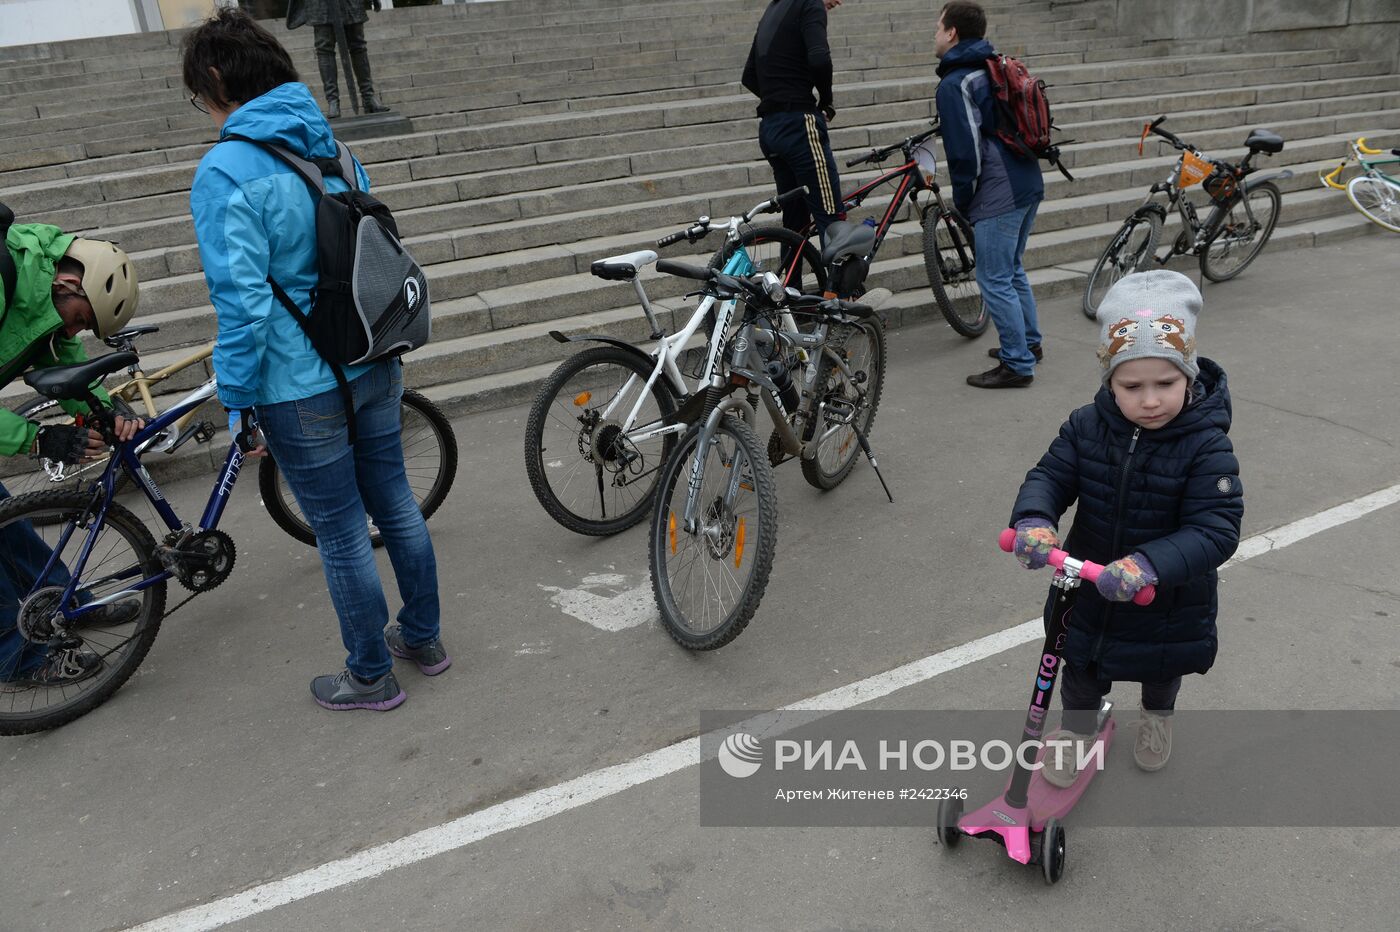 Велоквест в рамках акции "Георгиевская ленточка"